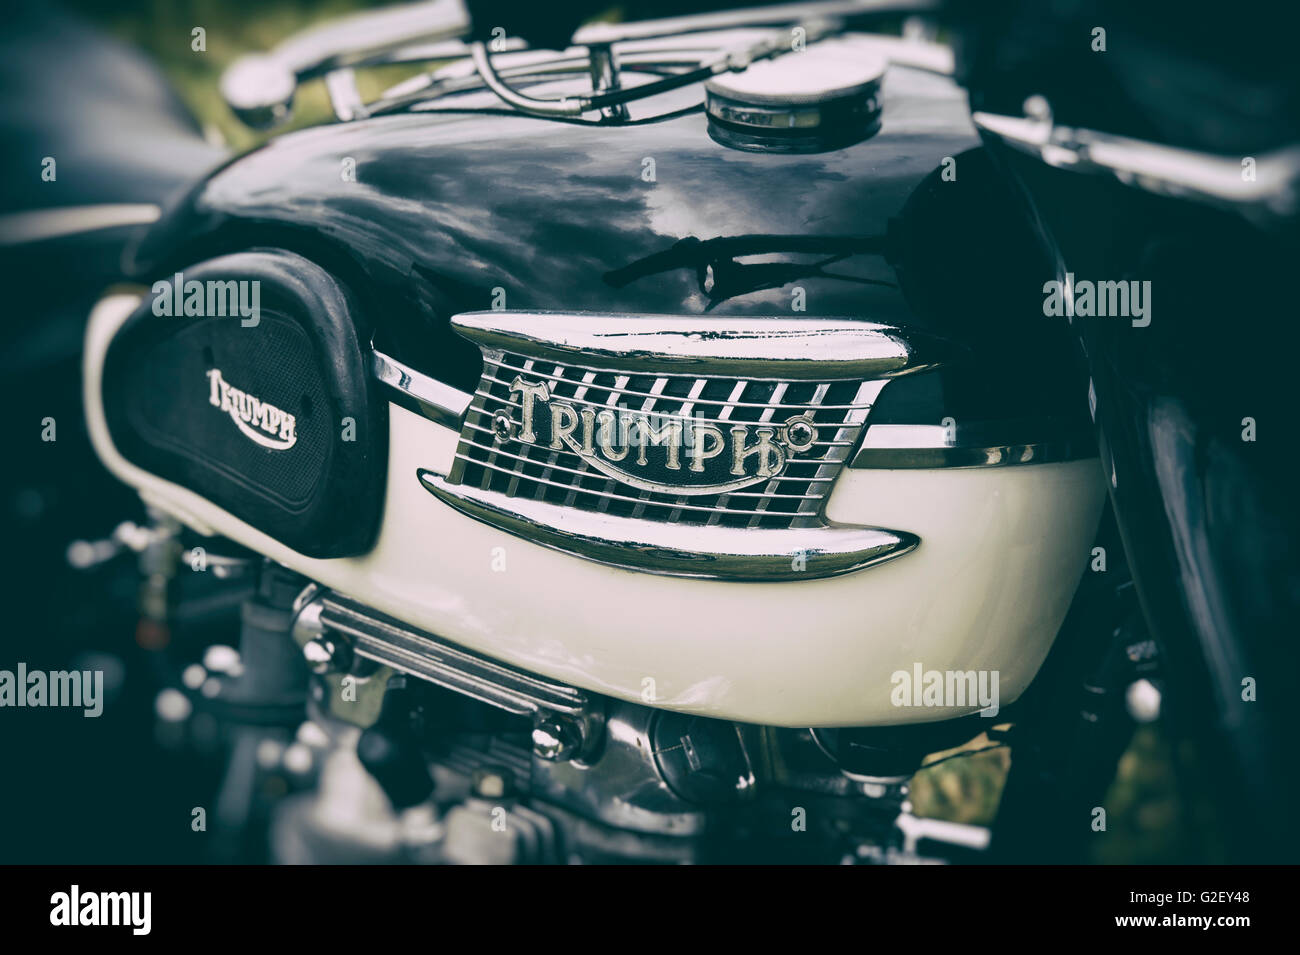 Triumph Tiger 110 650cc réservoir essence moto. Moto classique britannique. Vintage filtre appliqué Banque D'Images